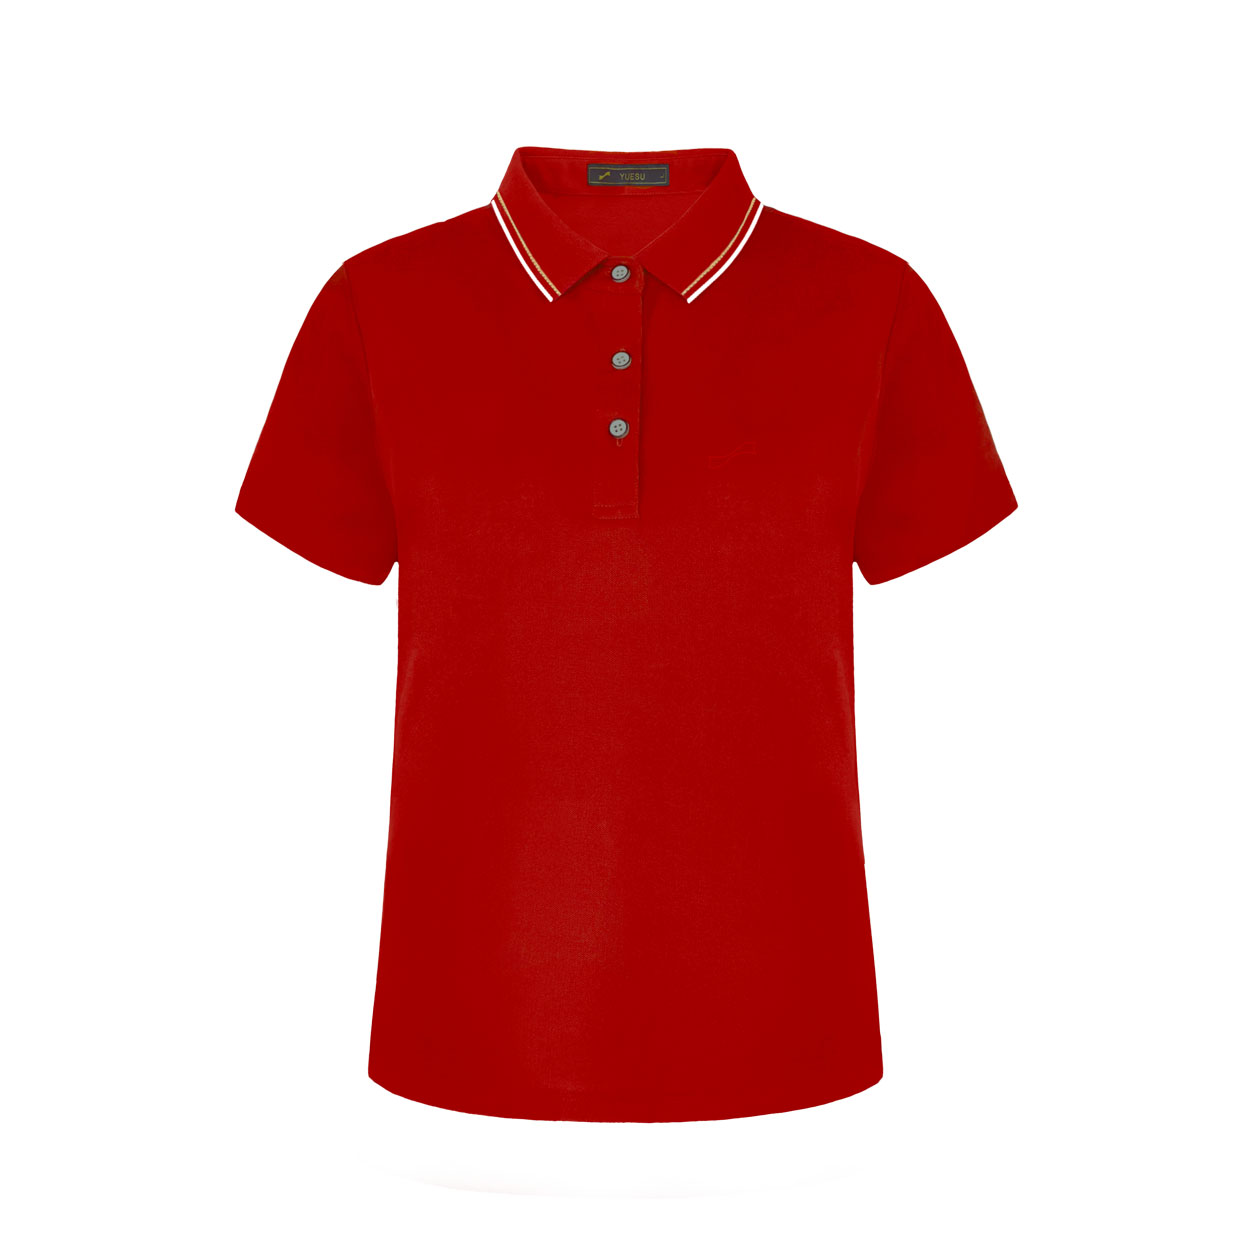 跃速夏季新款女子翻领短袖T恤 红色 款号：212320